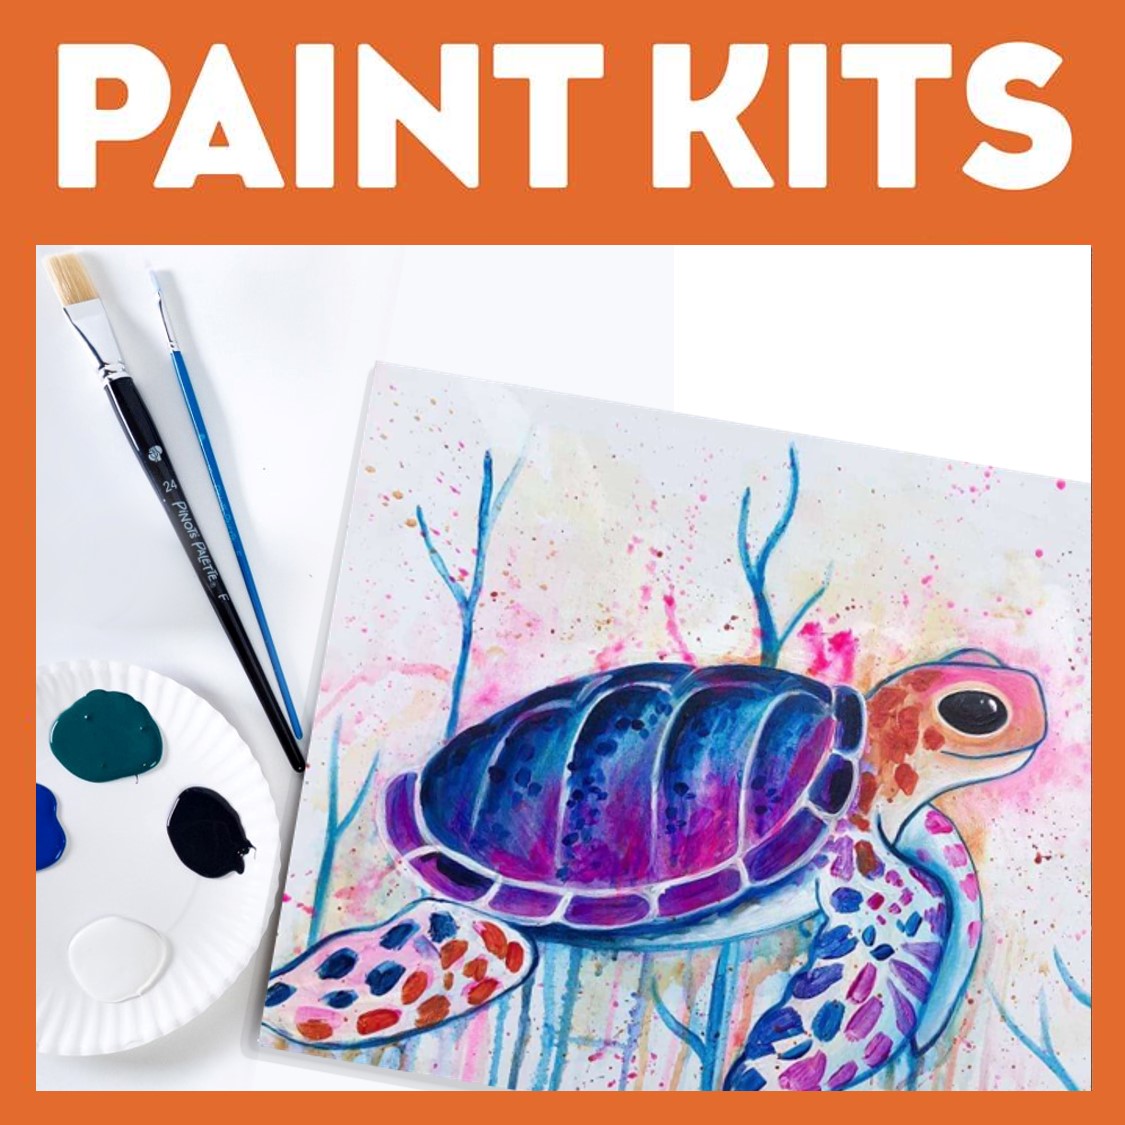 Take Home Paint Kits - Sat, May 21 1PM at Riverwalk